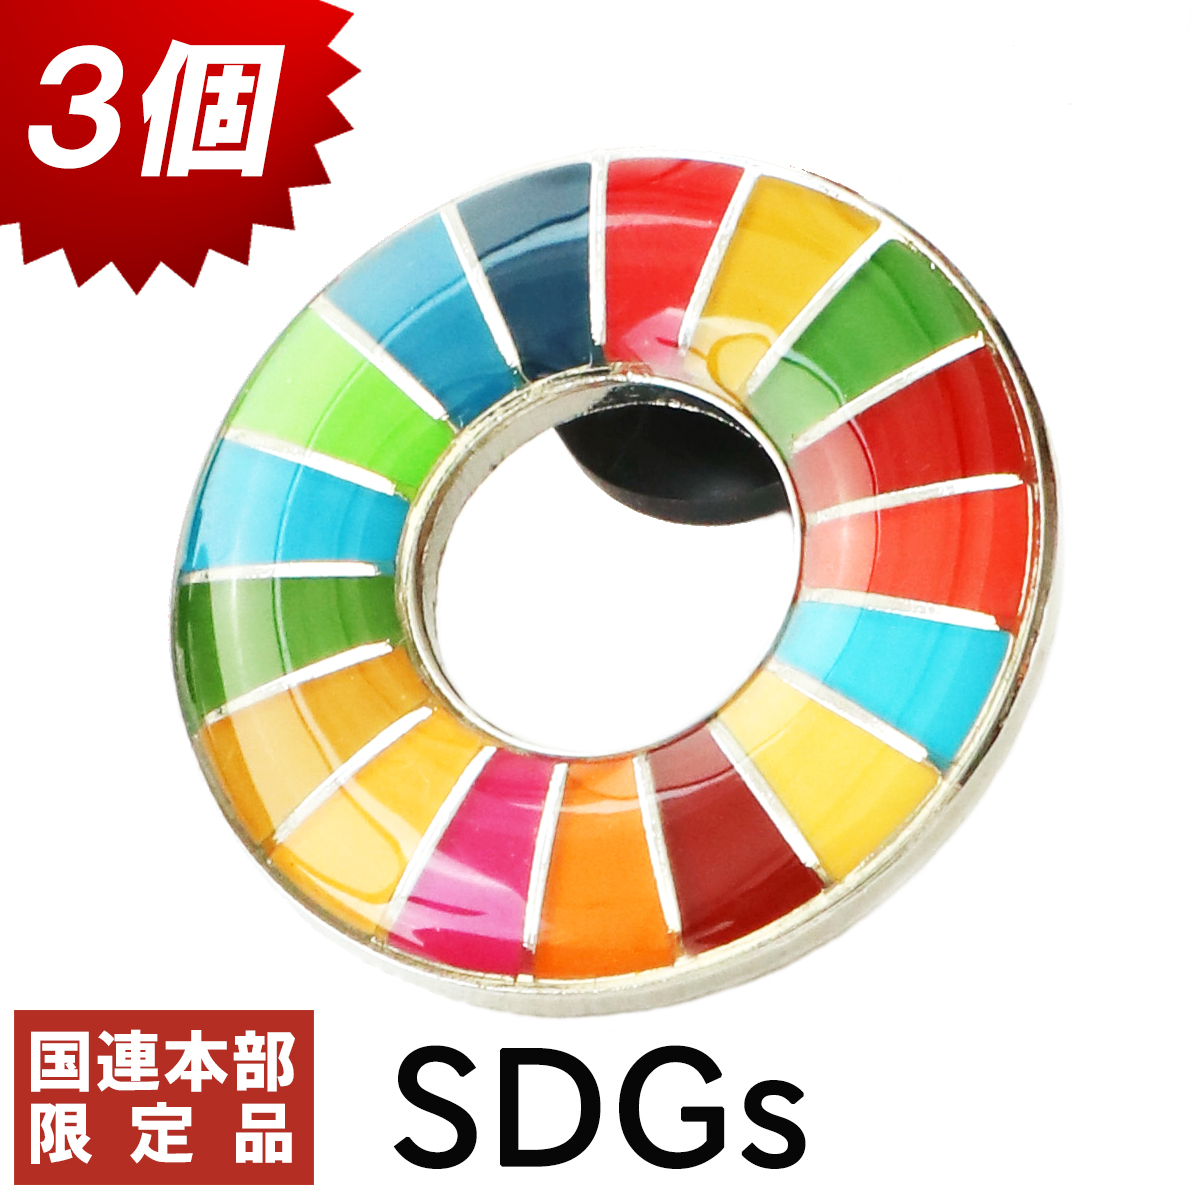 プレゼント 人気上昇中 持続可能 サステナブル 人気 シンプル ついに再販開始 おしゃれ 国連本部限定 SDGs ピンバッジ 3個 公式 正規品 sdgs バッヂ 国連 SDGsバッジ 17 目標 ショップ限定 バッチ 丸み 日本未発売